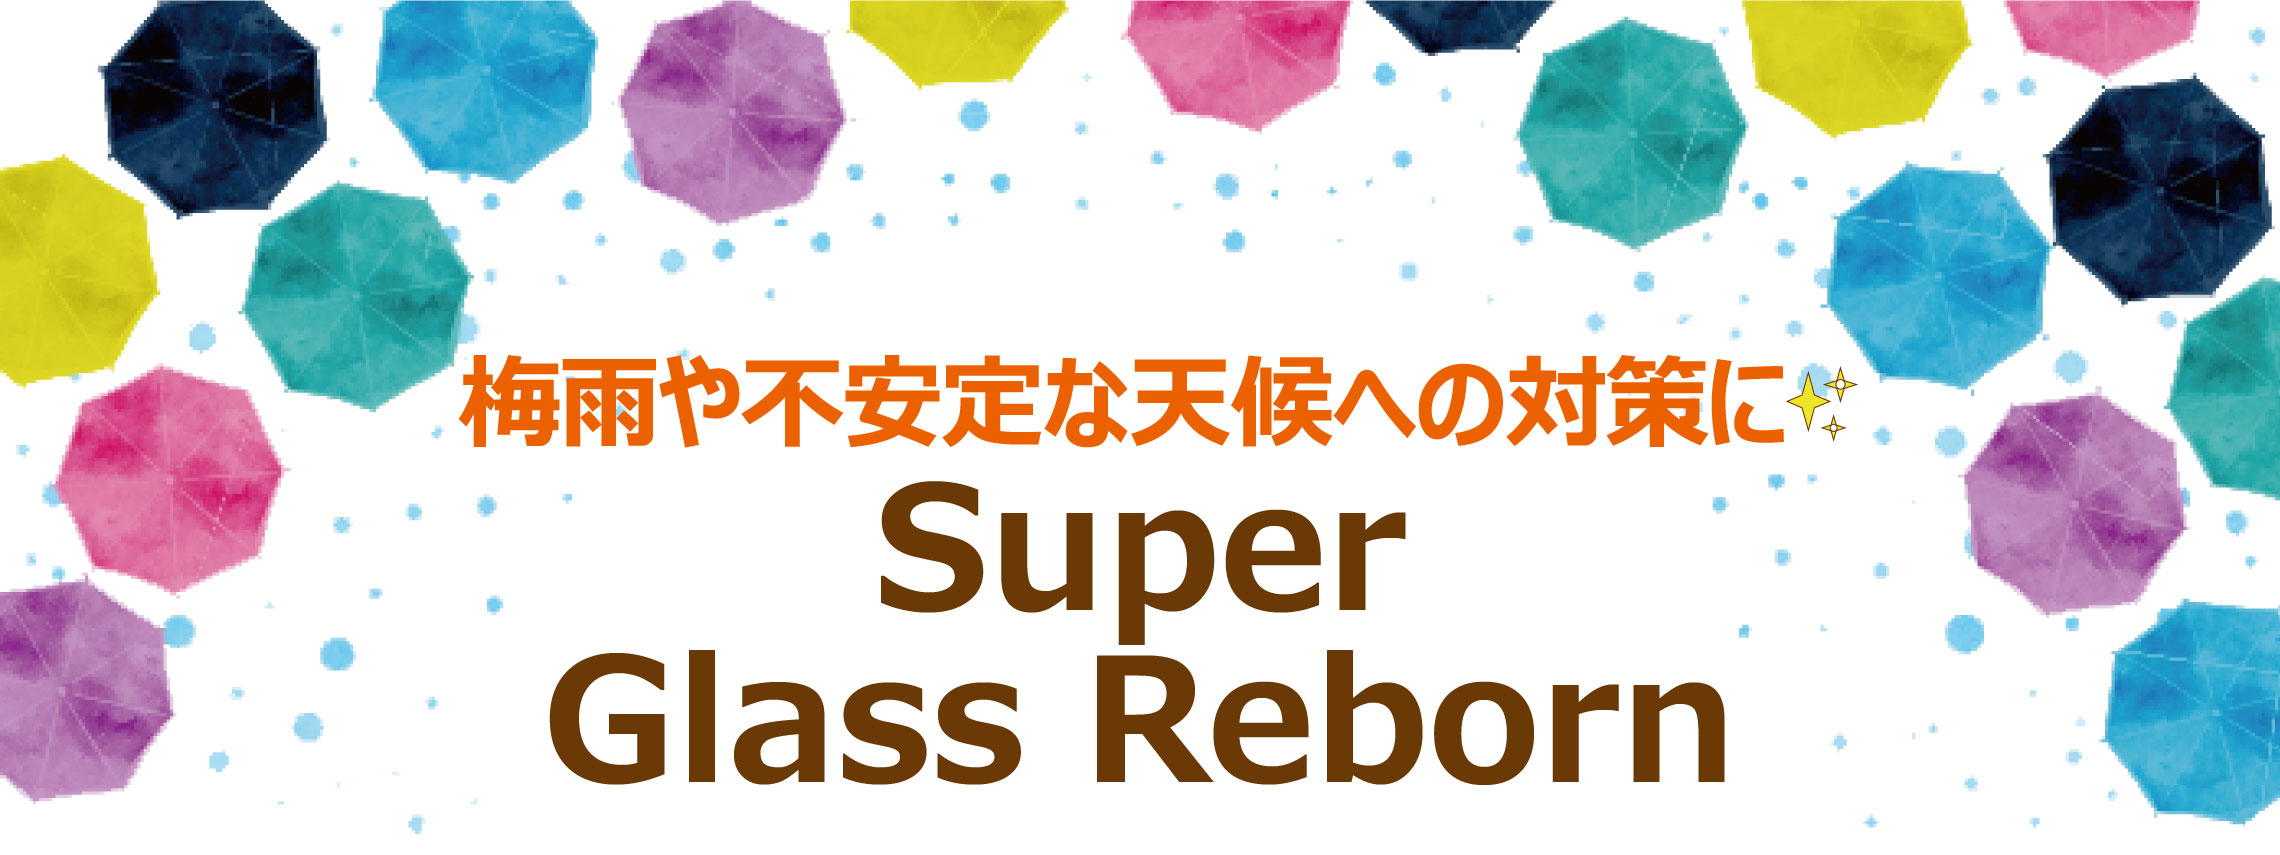 Super Glass Reborn梅雨～夏